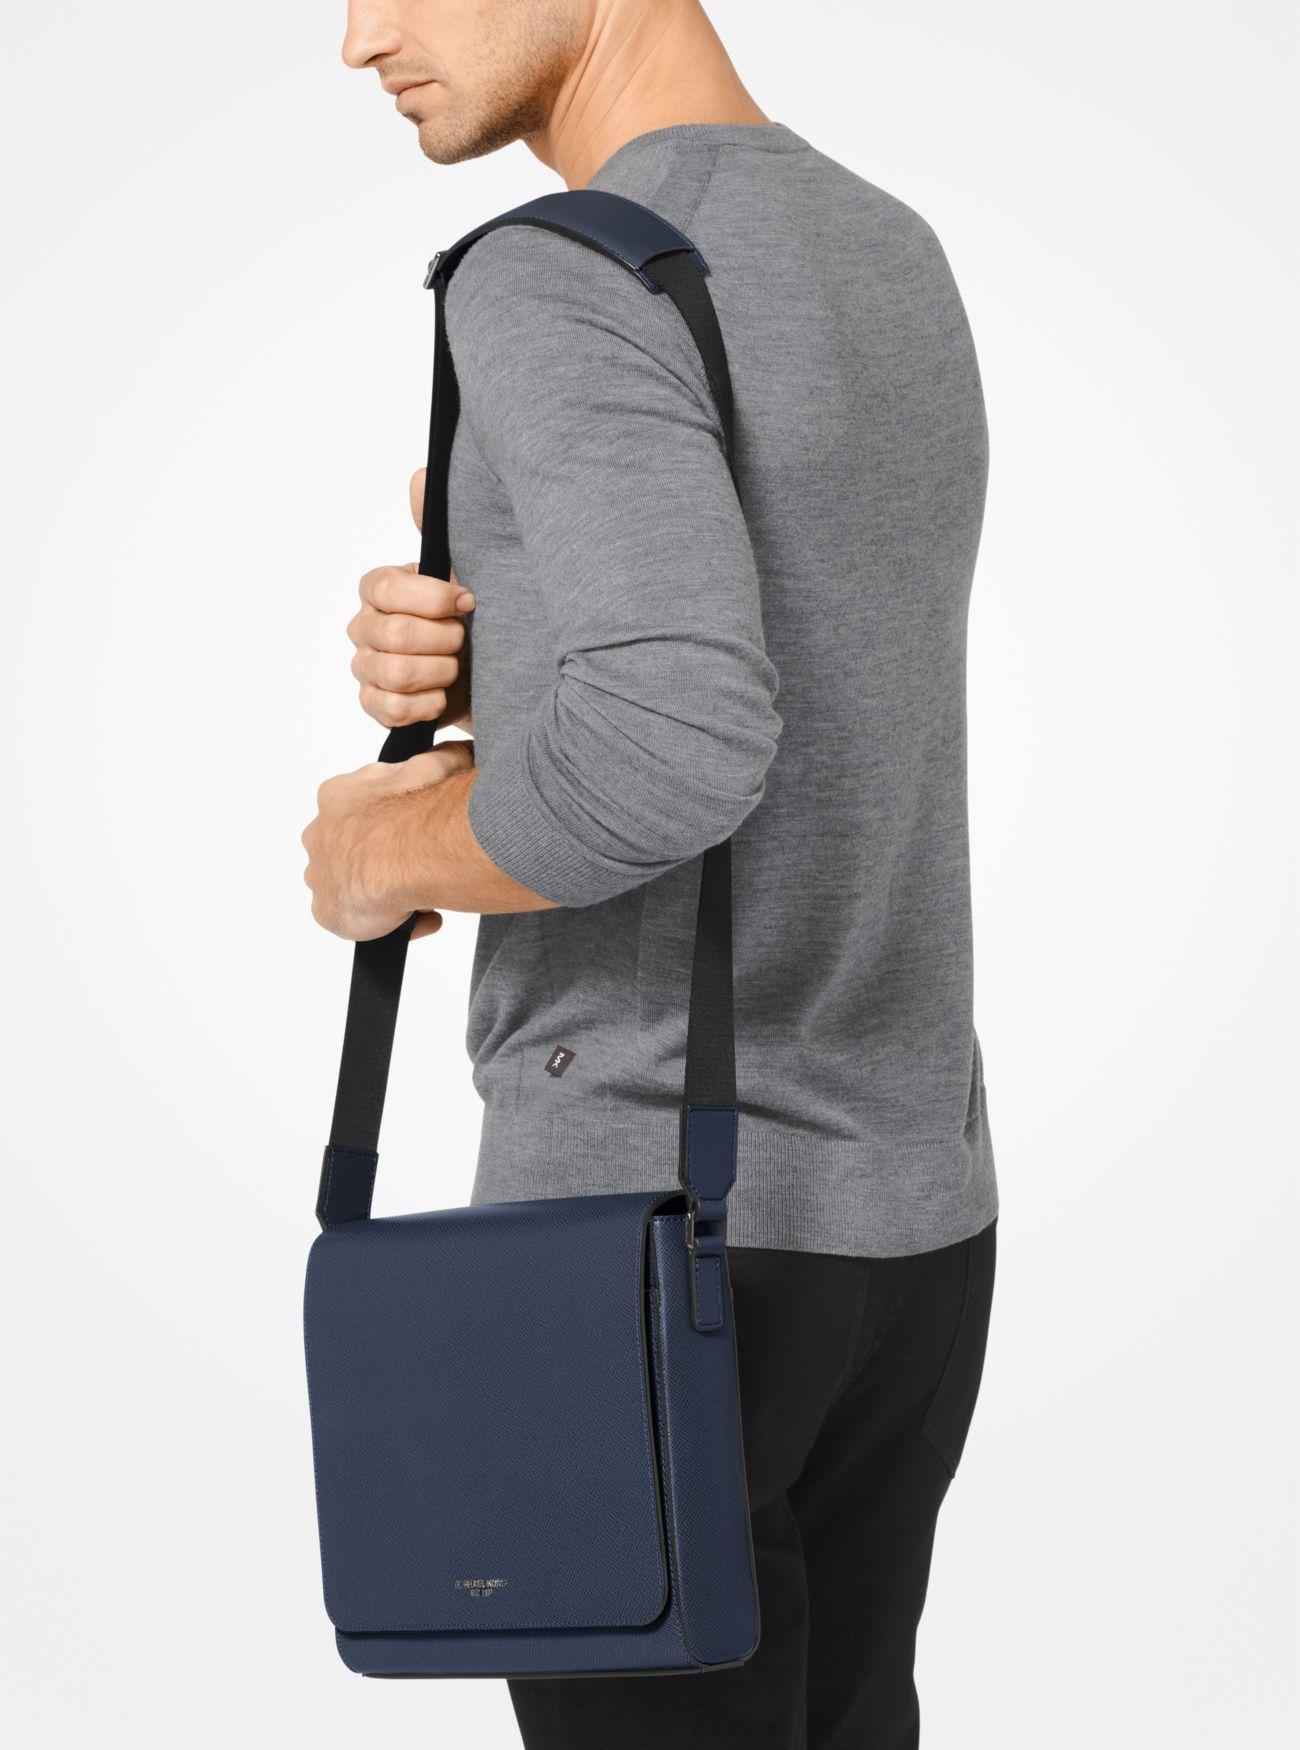 Michael Kors Harrison Medium Leather Bag Blue for Men - Lyst